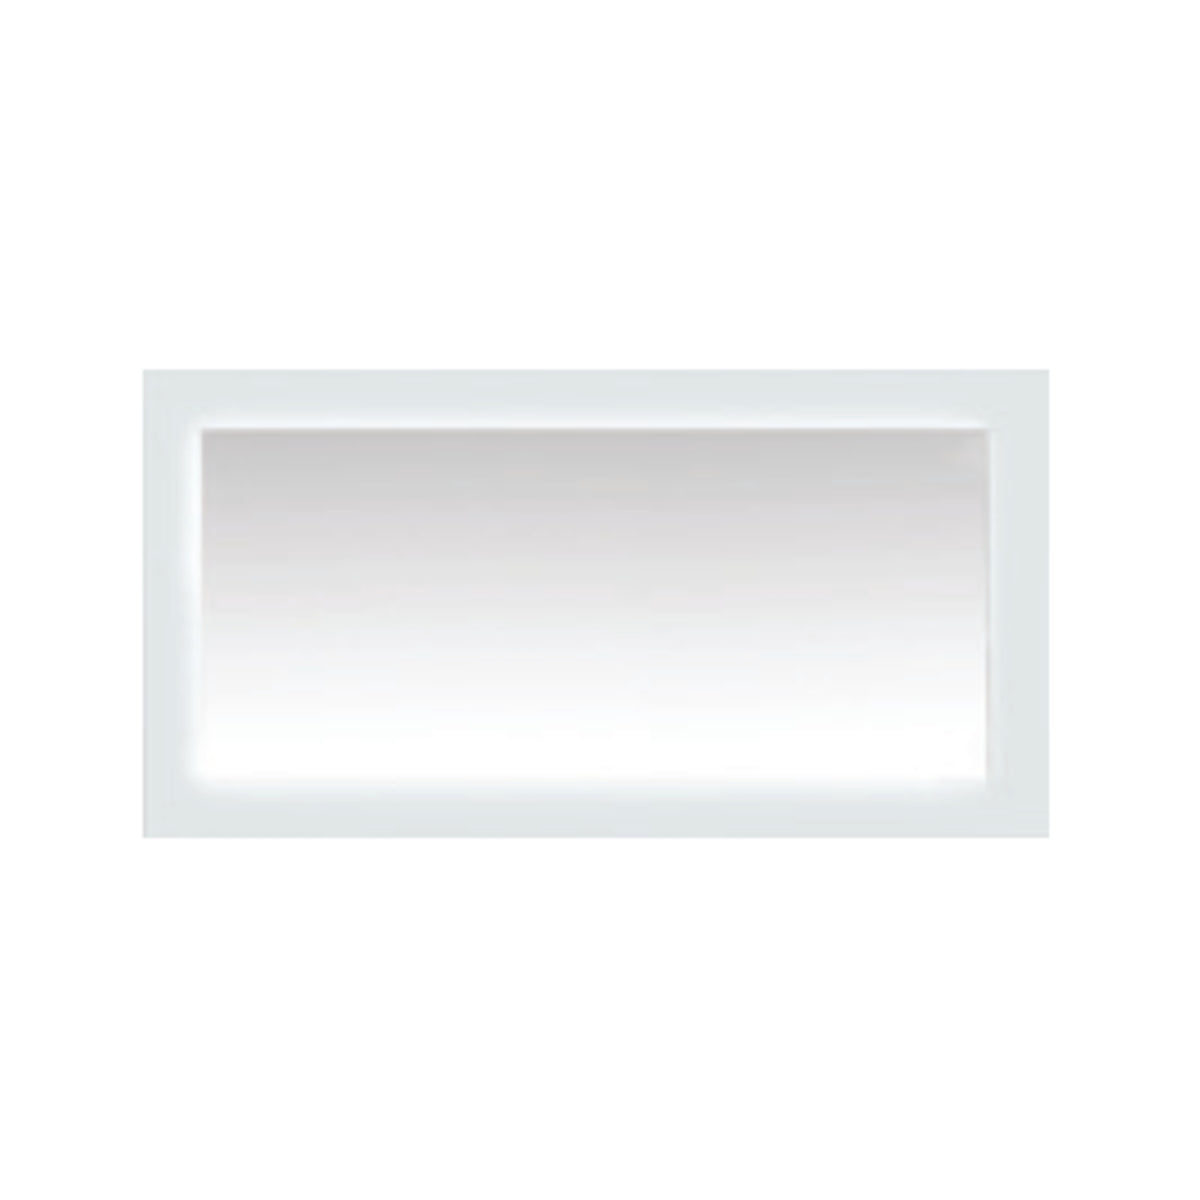 Desarte 60" x 31" Frameless LED Mirror